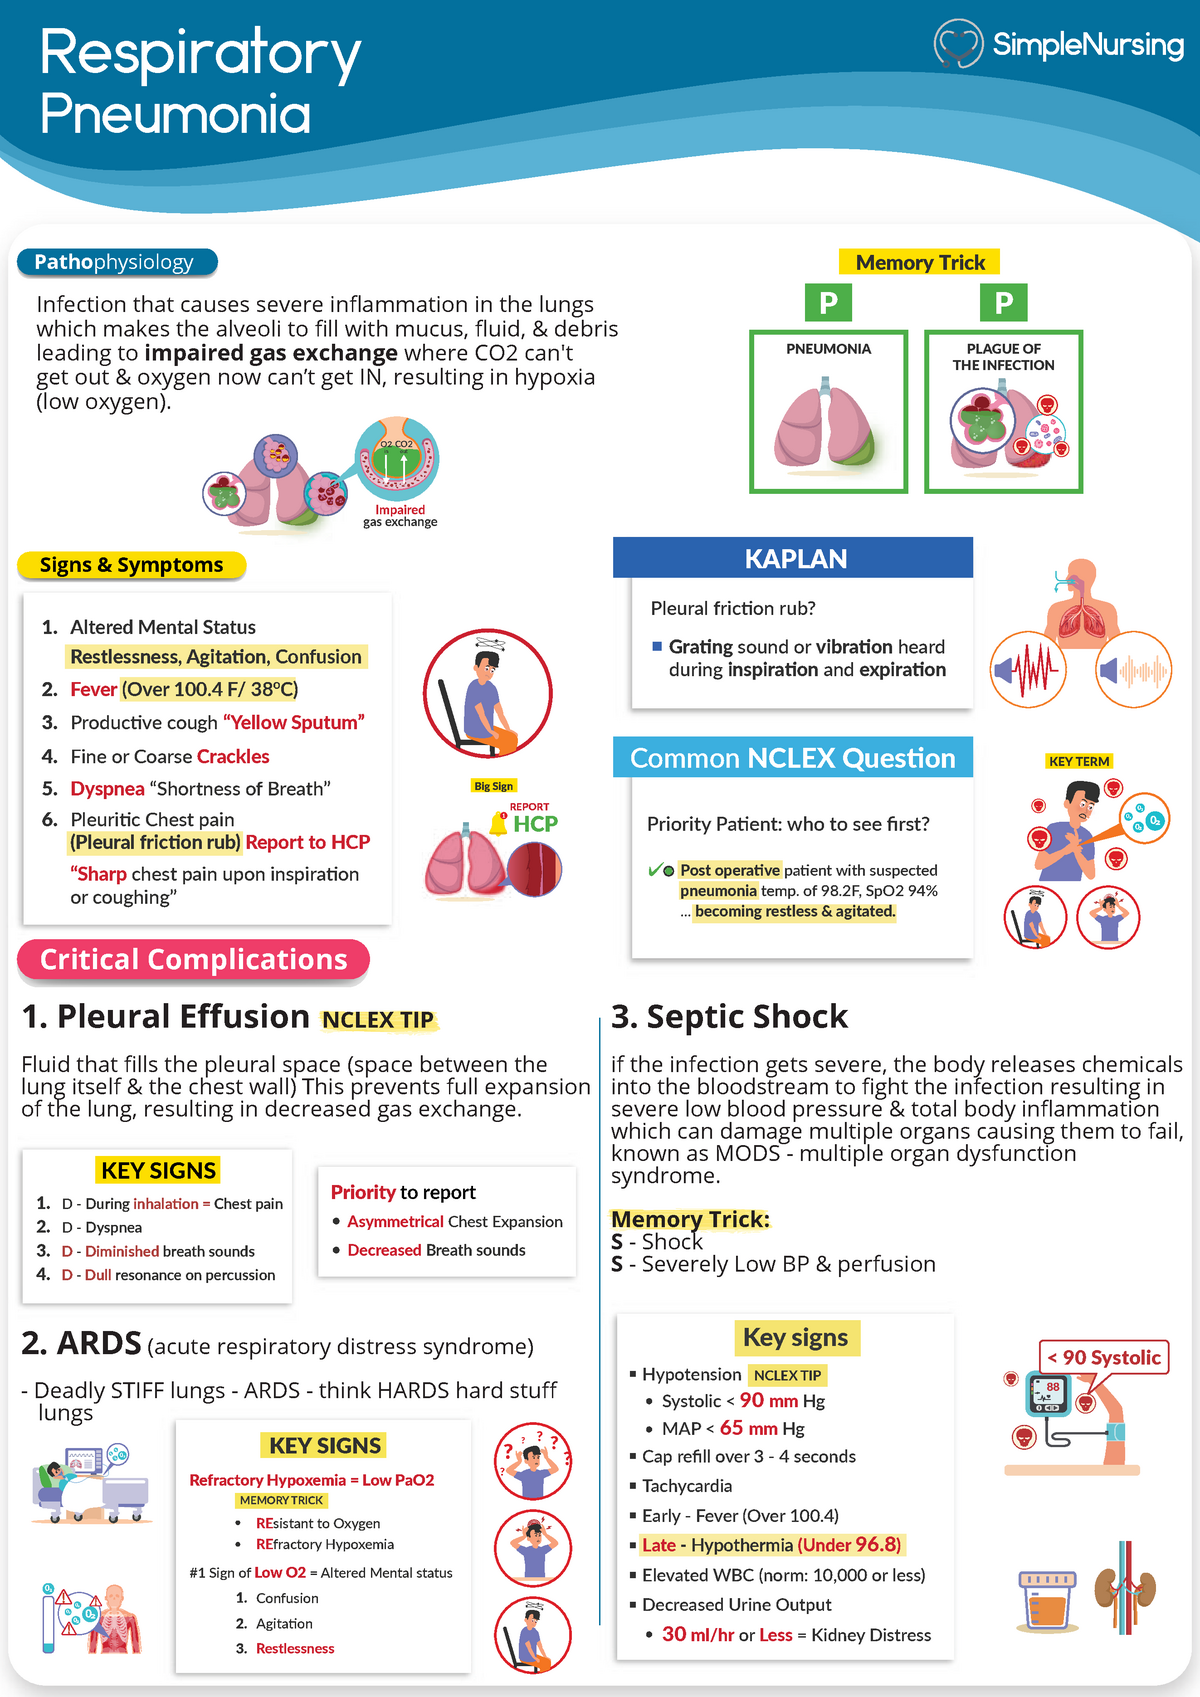 Respiratory Notes From Simple Nursing Respiratory Pneumonia Patho